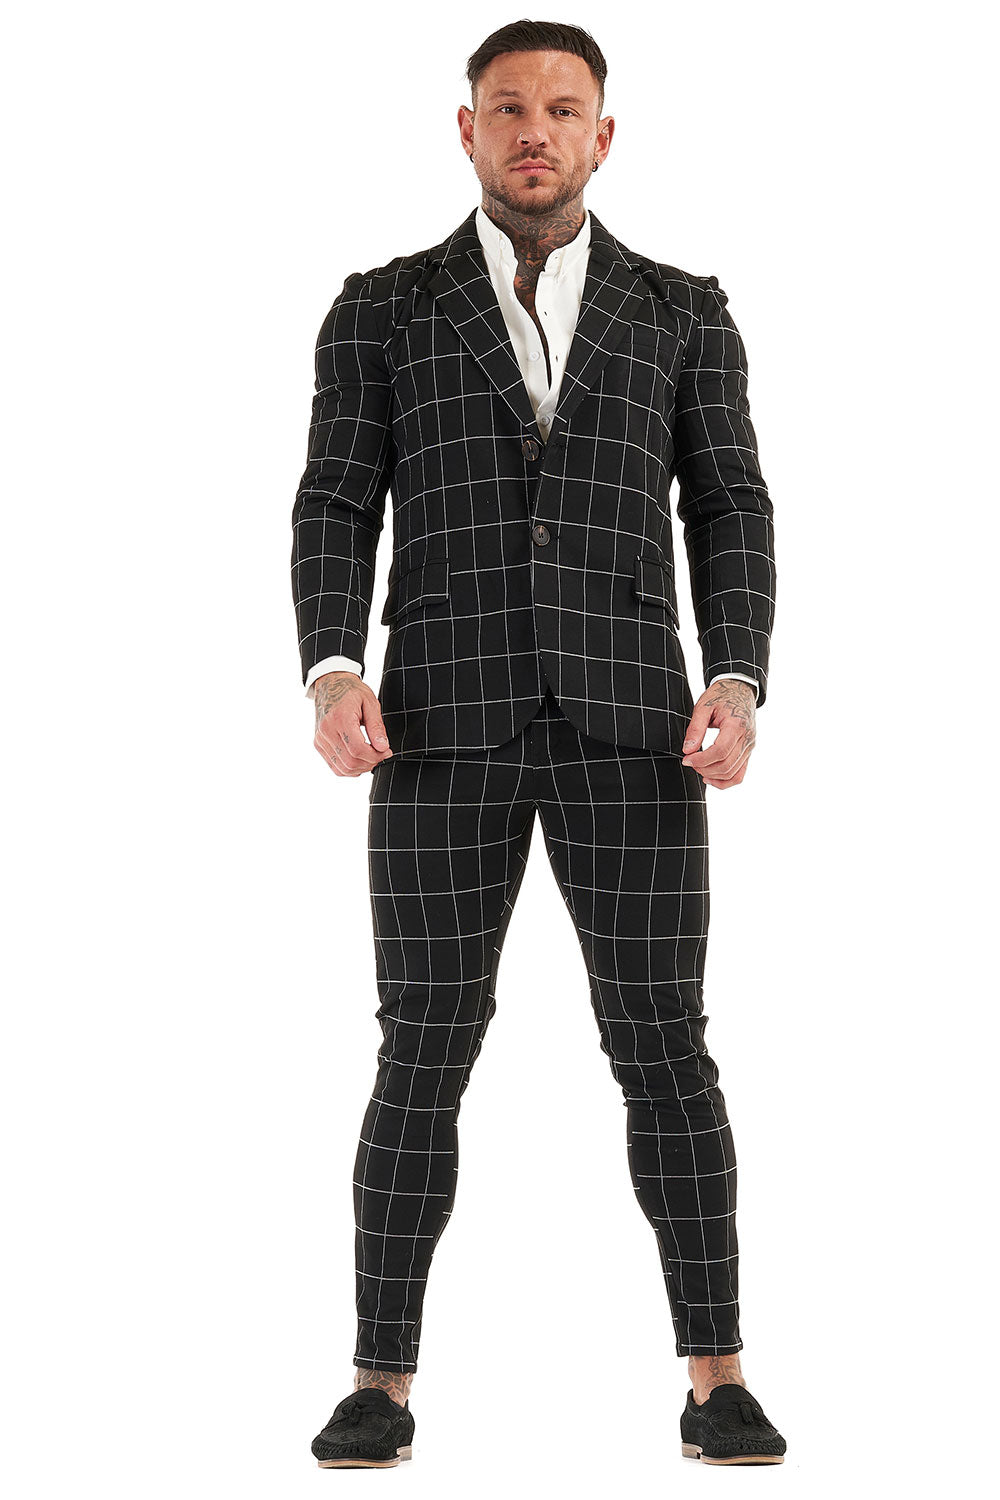 Gingtto Men's Casual Suit Jackets Stylish Classic Men's Suit Jacket